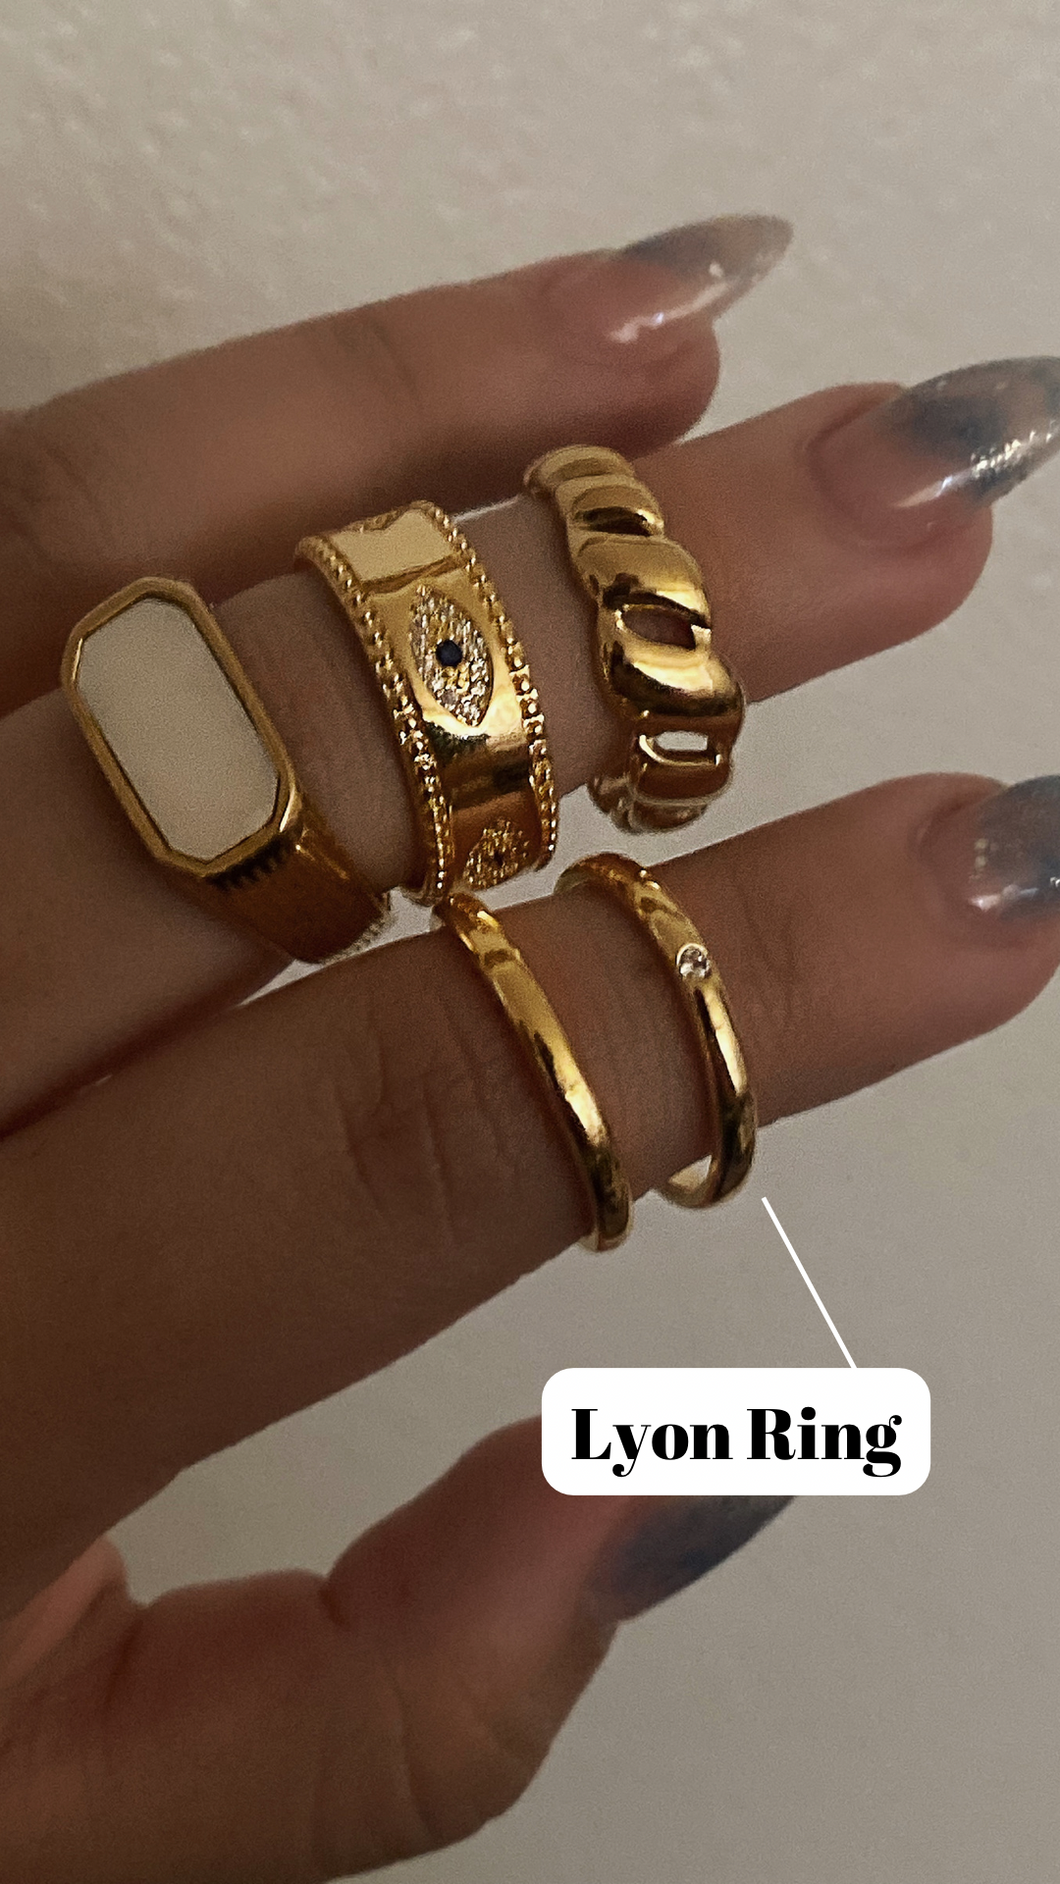 Lyon Ring